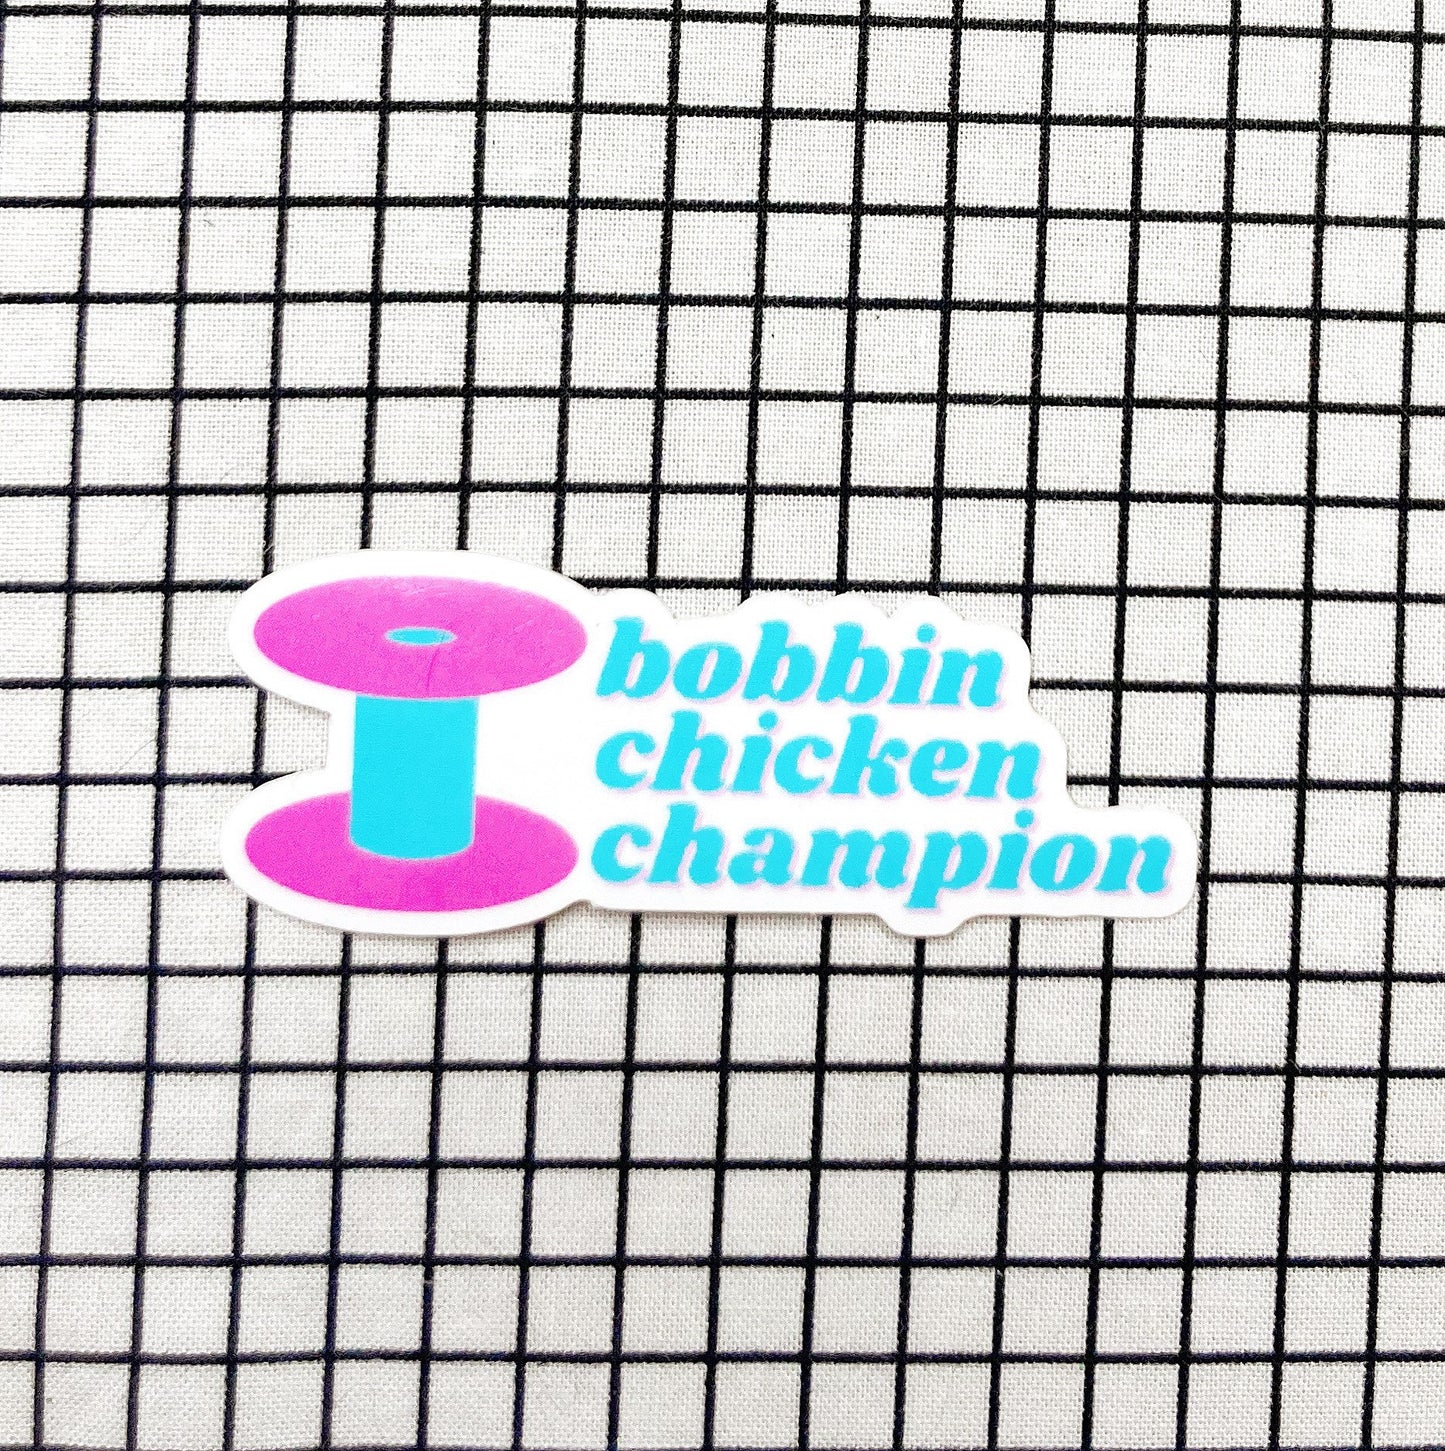 Bobbin chicken champion sewing and quilting vinyl sticker